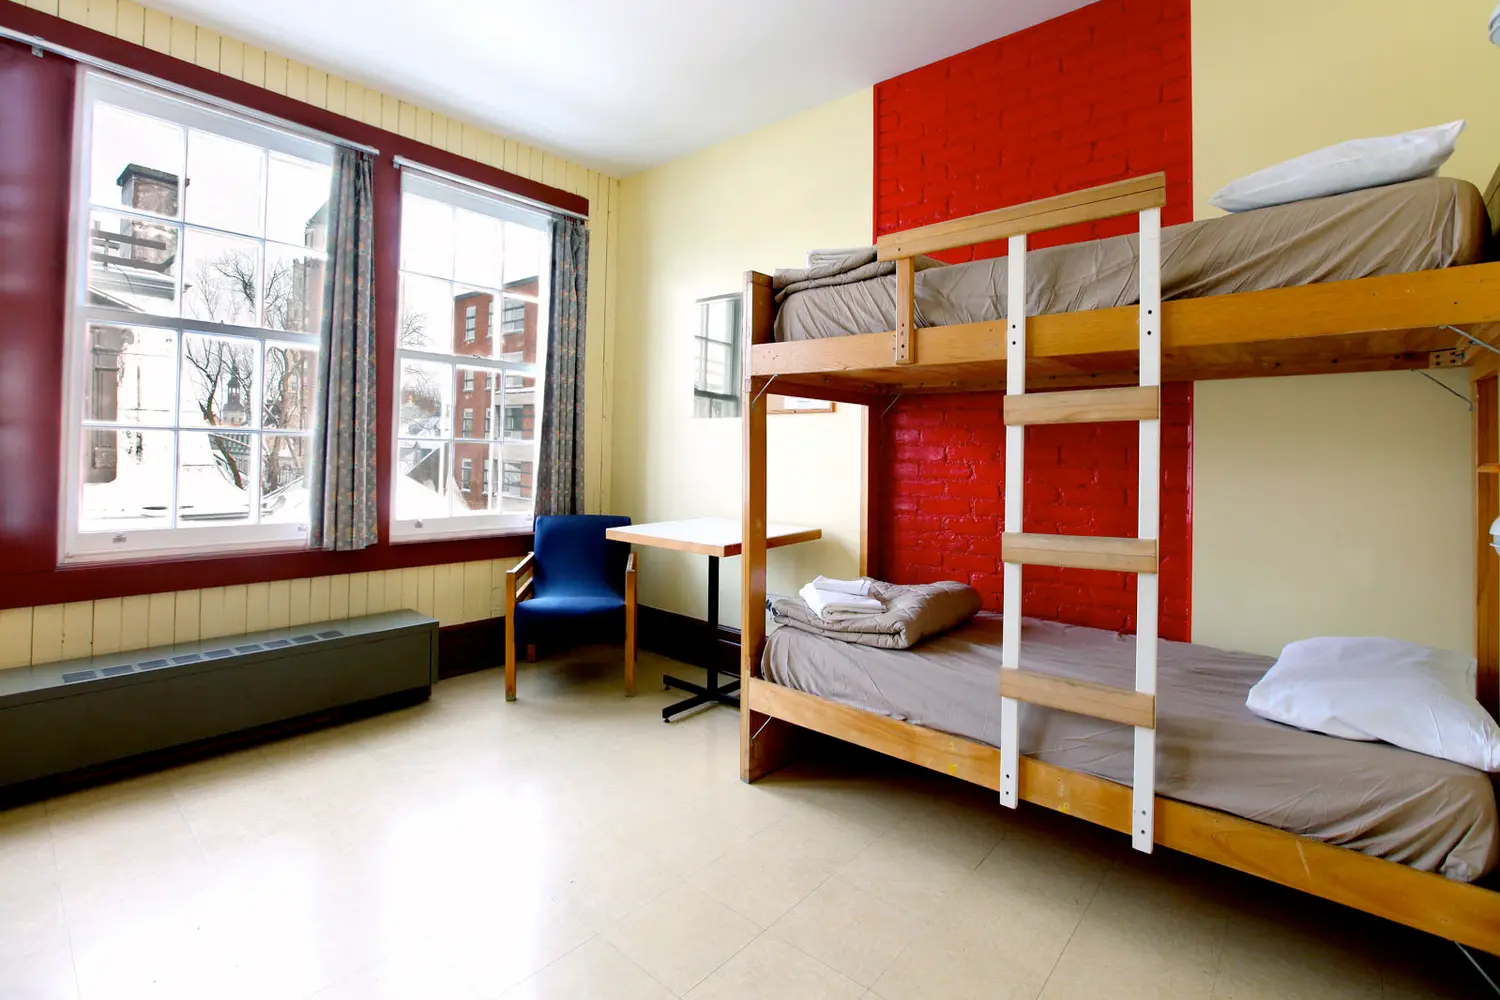 Dorm room at the HI Québec, Auberge International de Québec in Canada